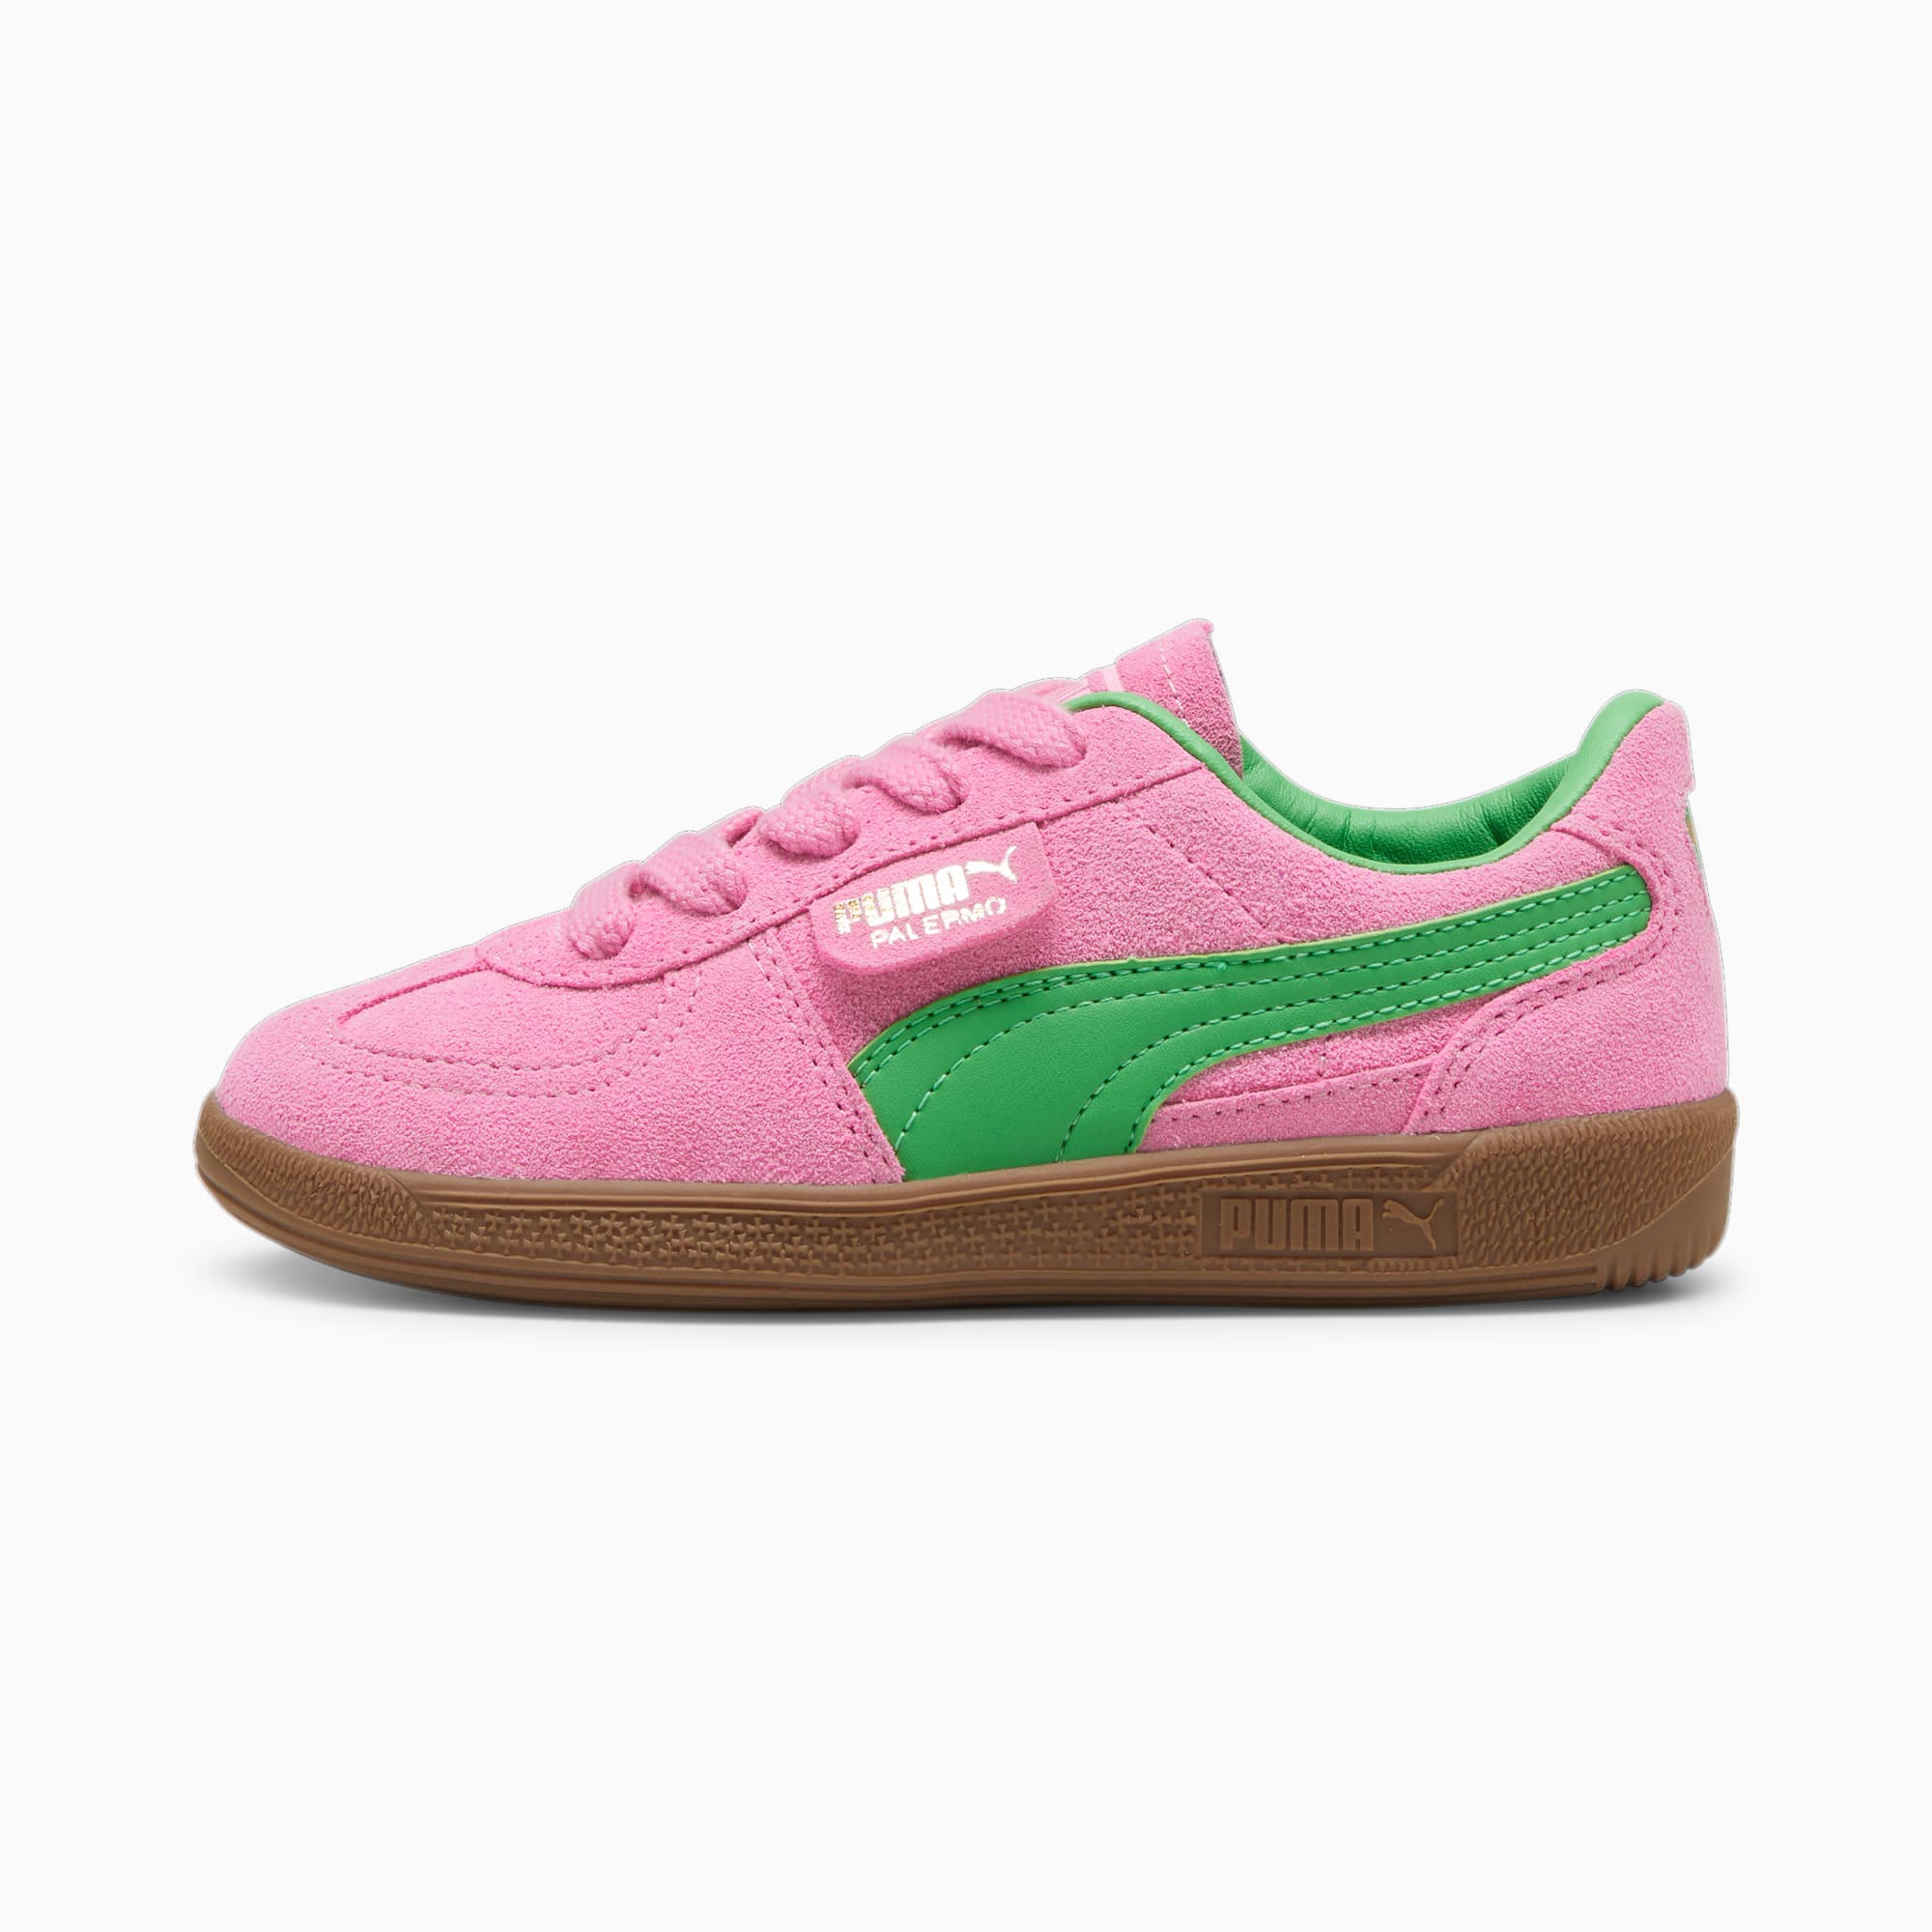 Puma Palermo OG Green/Pink